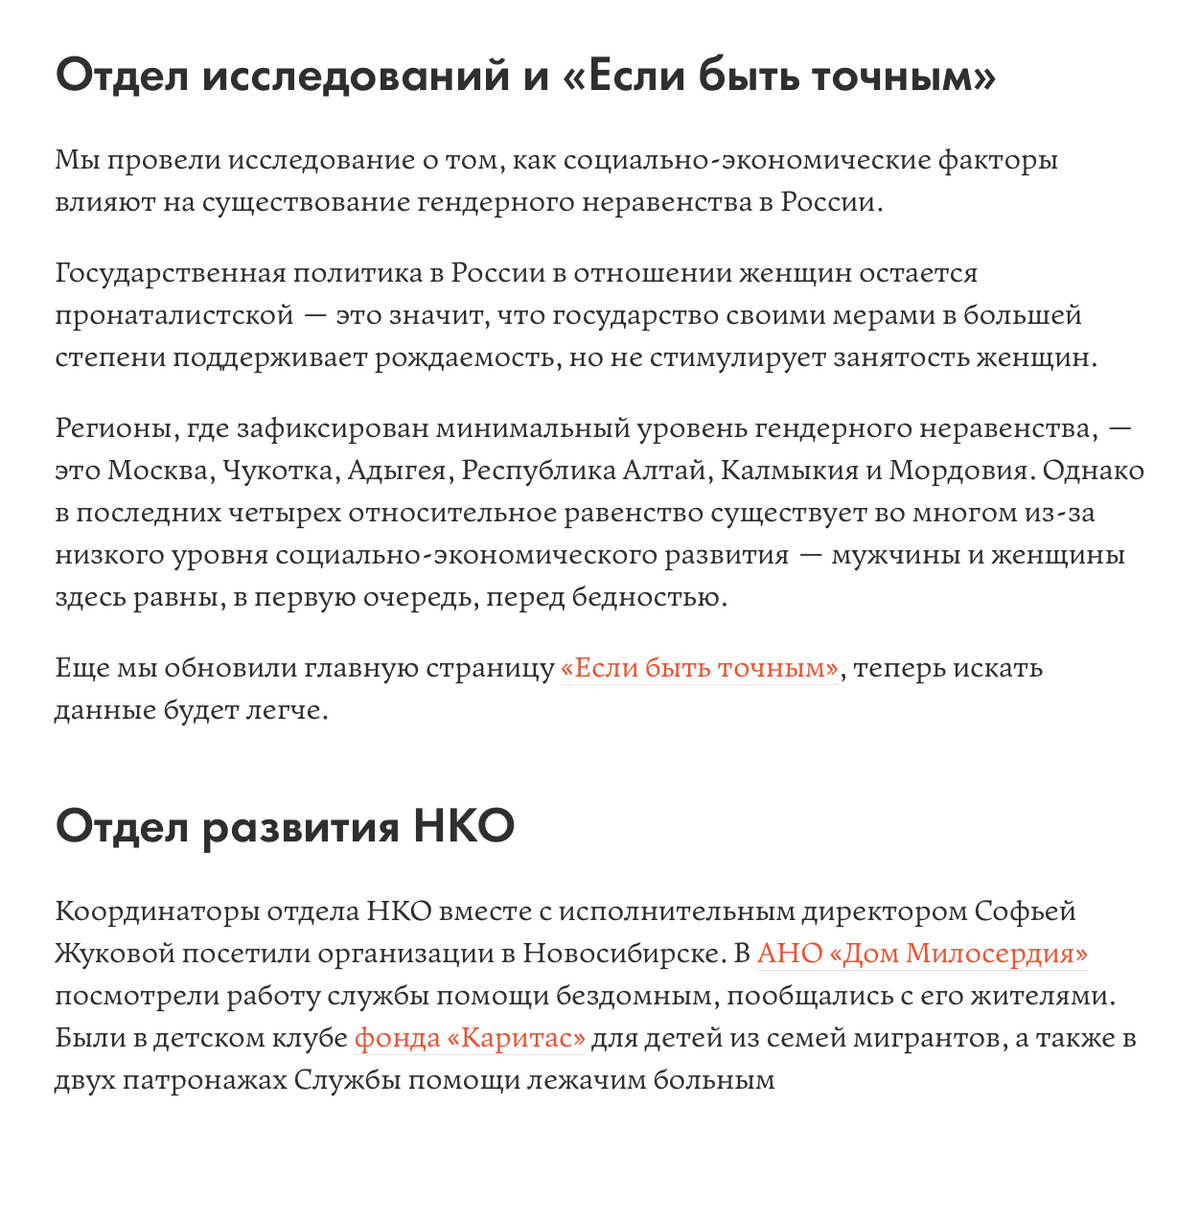 Открыть благотворительный фонд в москве снять юридический адрес